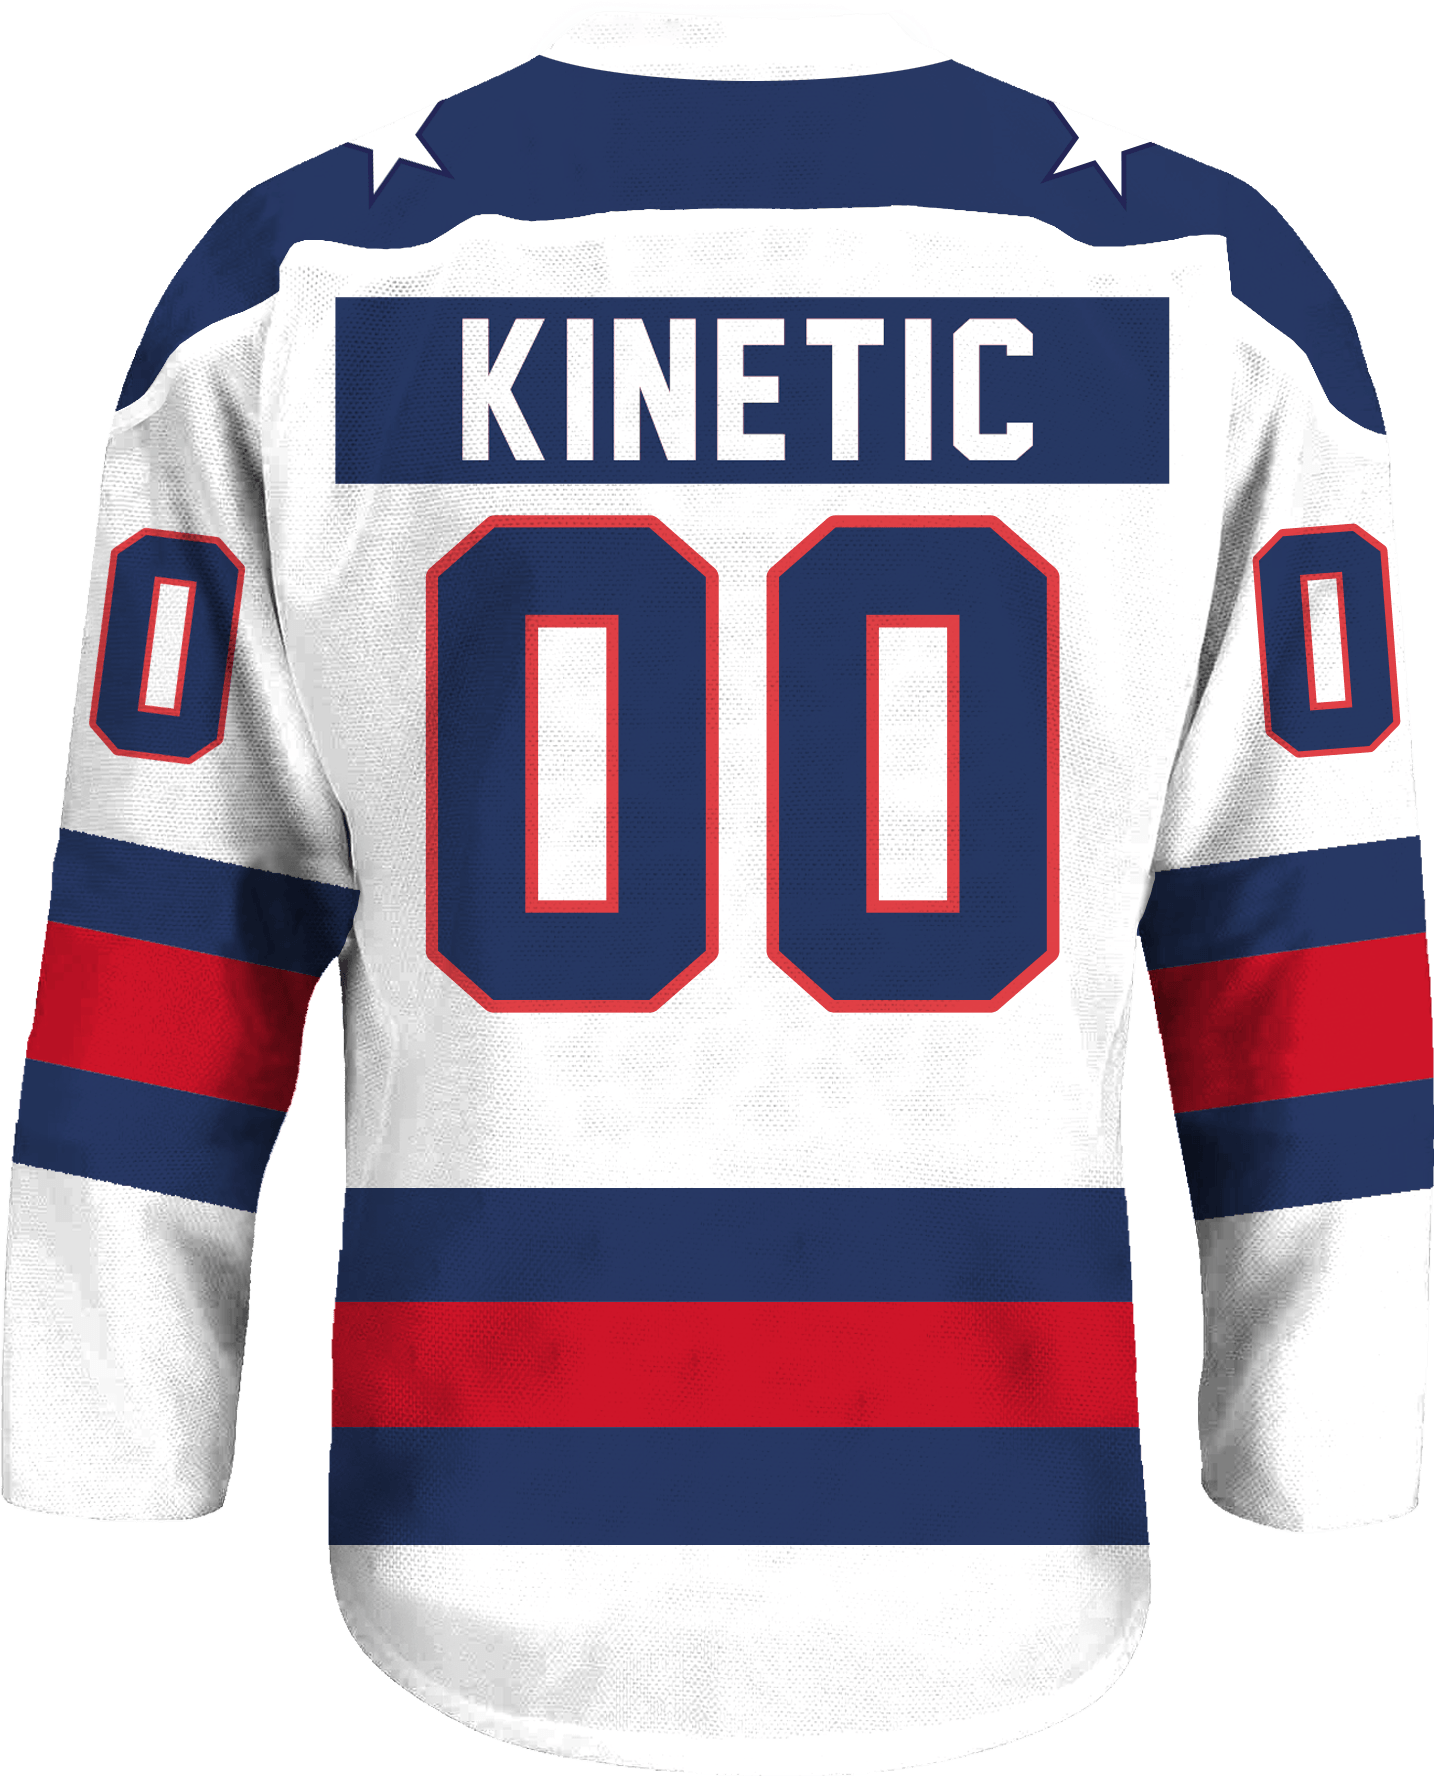 Chi Psi - Astro Hockey Jersey - Kinetic Society